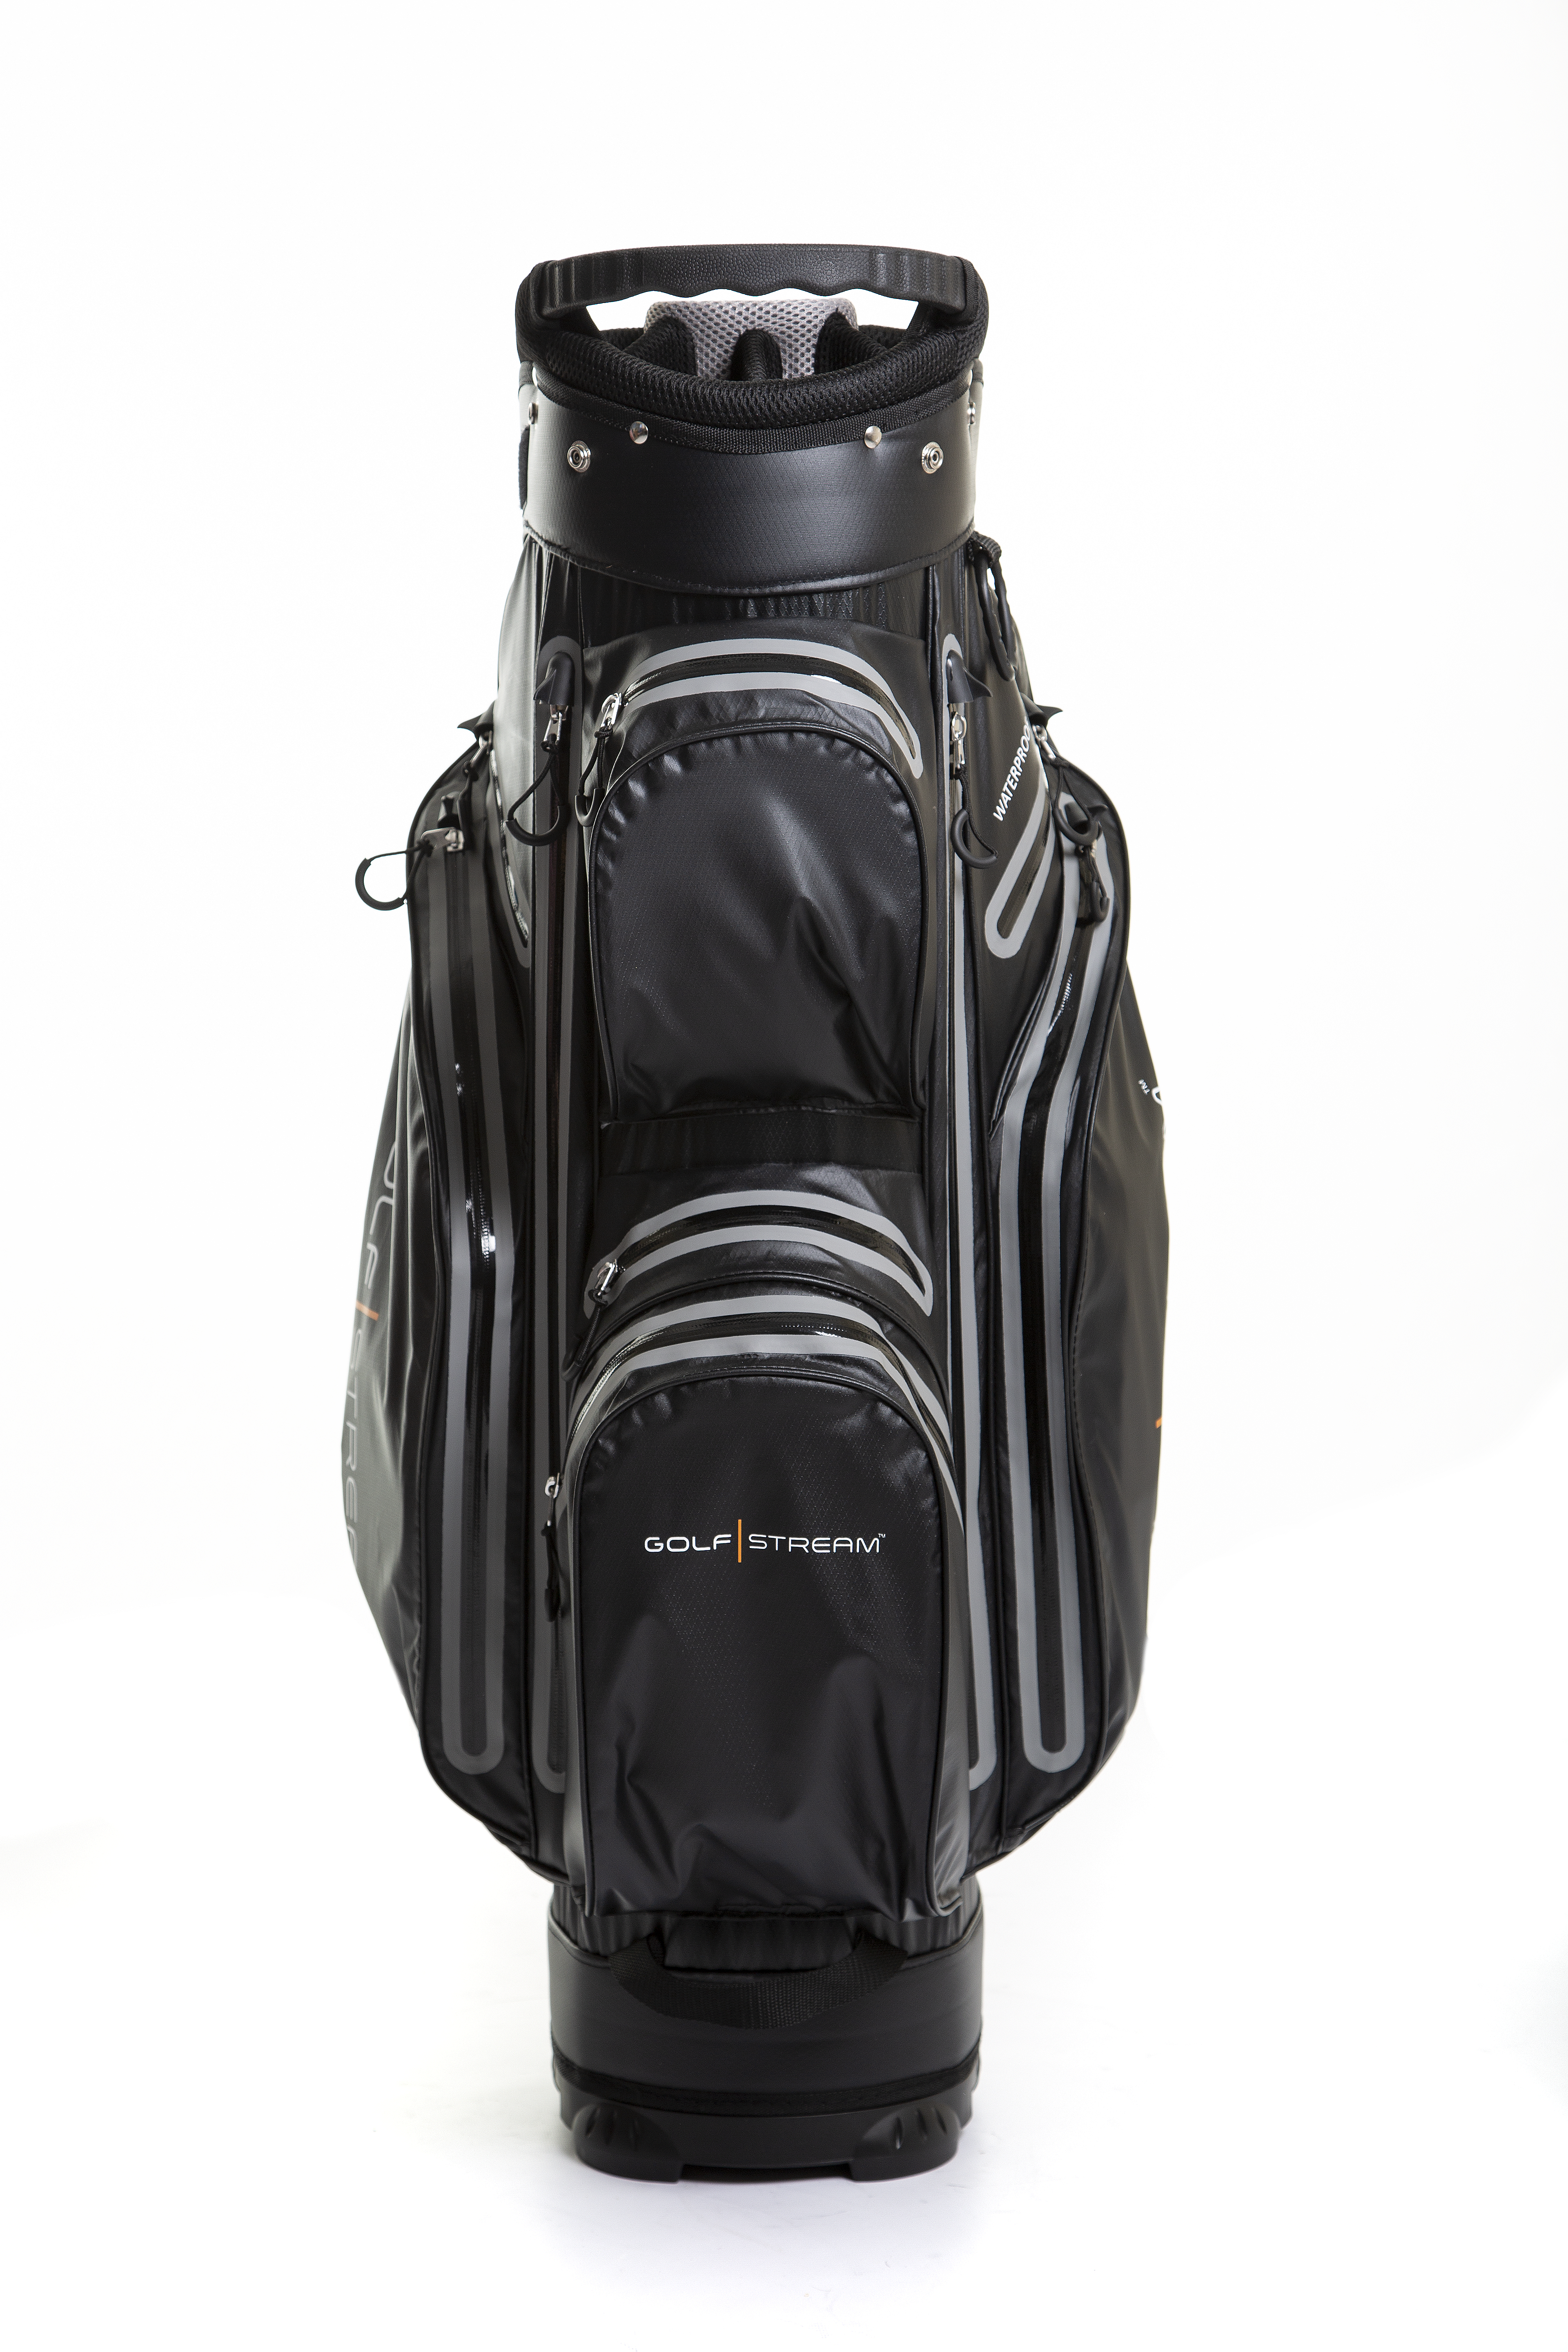 Golfstream rolls out new lightweight waterproof cart bag